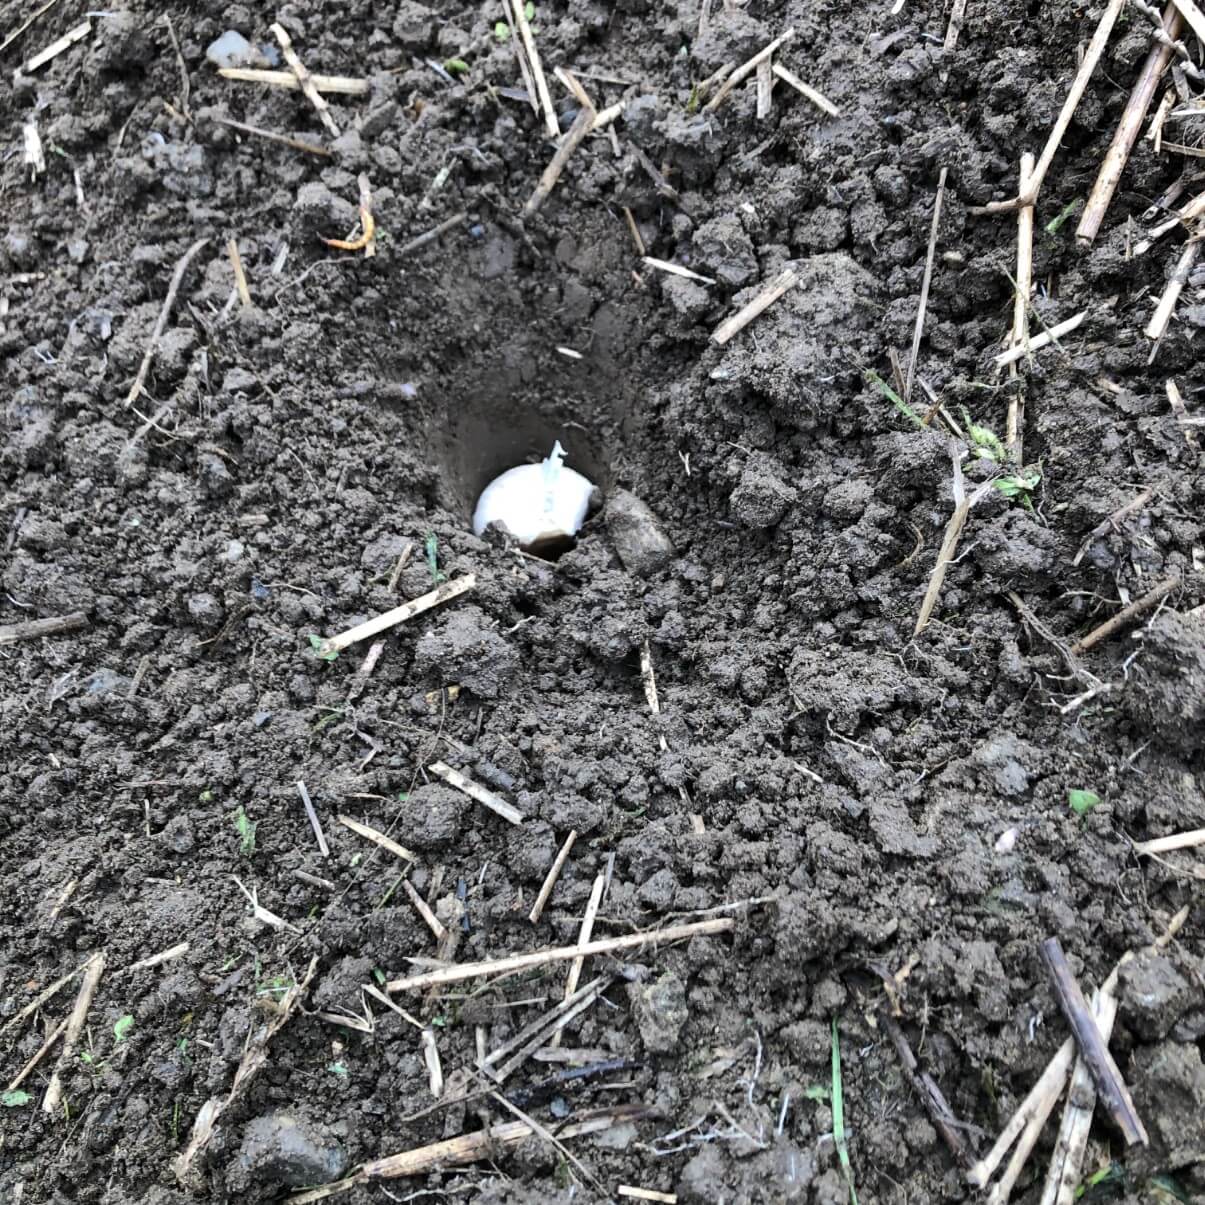 garlic clove in hole in soil